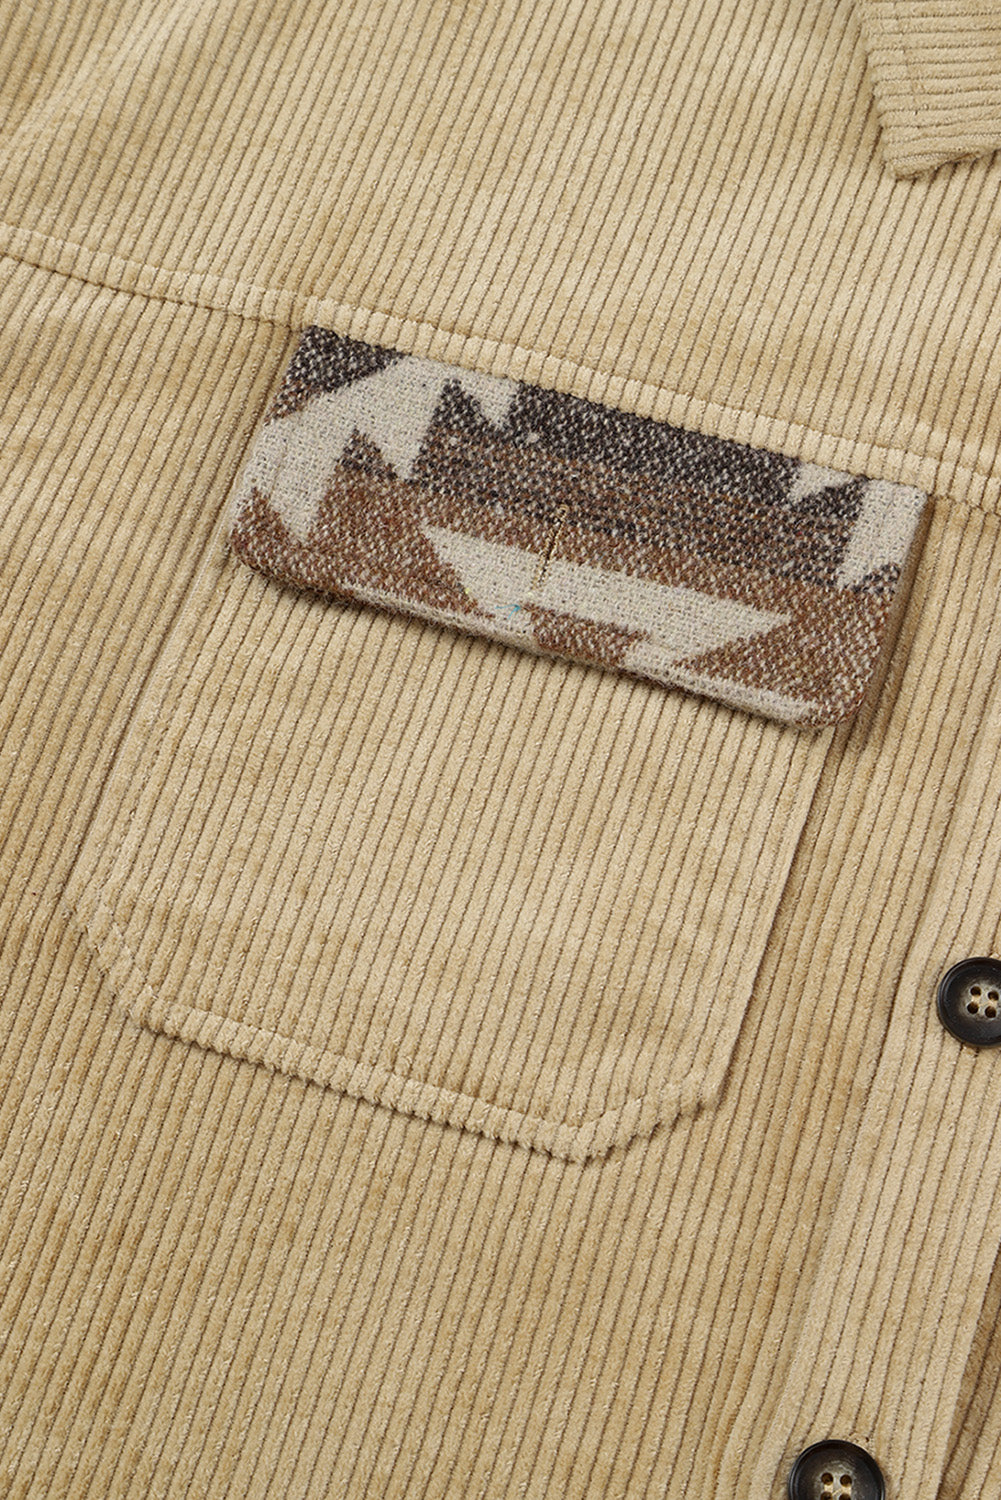 Khaki Aztec Print Patchwork Frayed Edge Corduroy Jacket